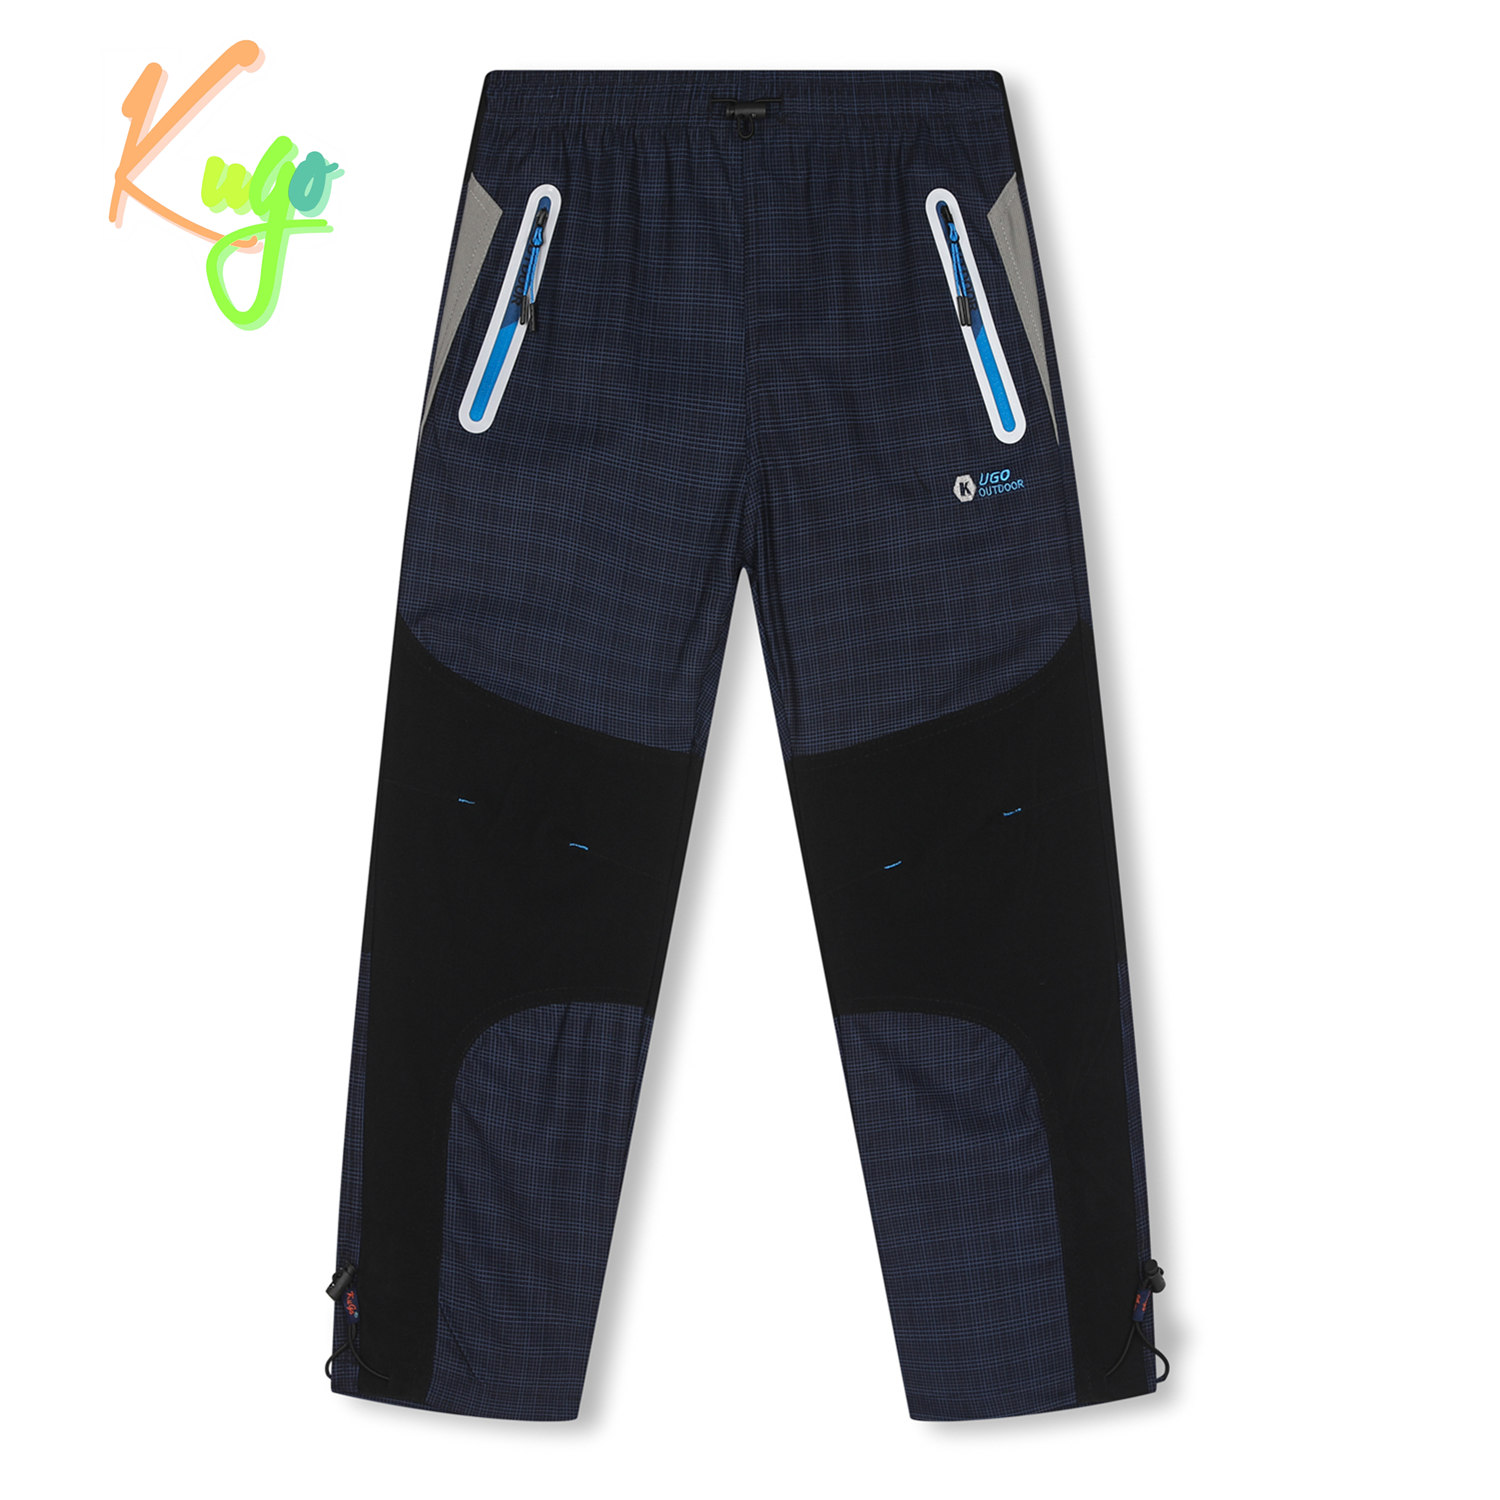 Chlapecké outdoorové kalhoty - KUGO G9651, tmavě modrá Barva: Modrá tmavě, Velikost: 116